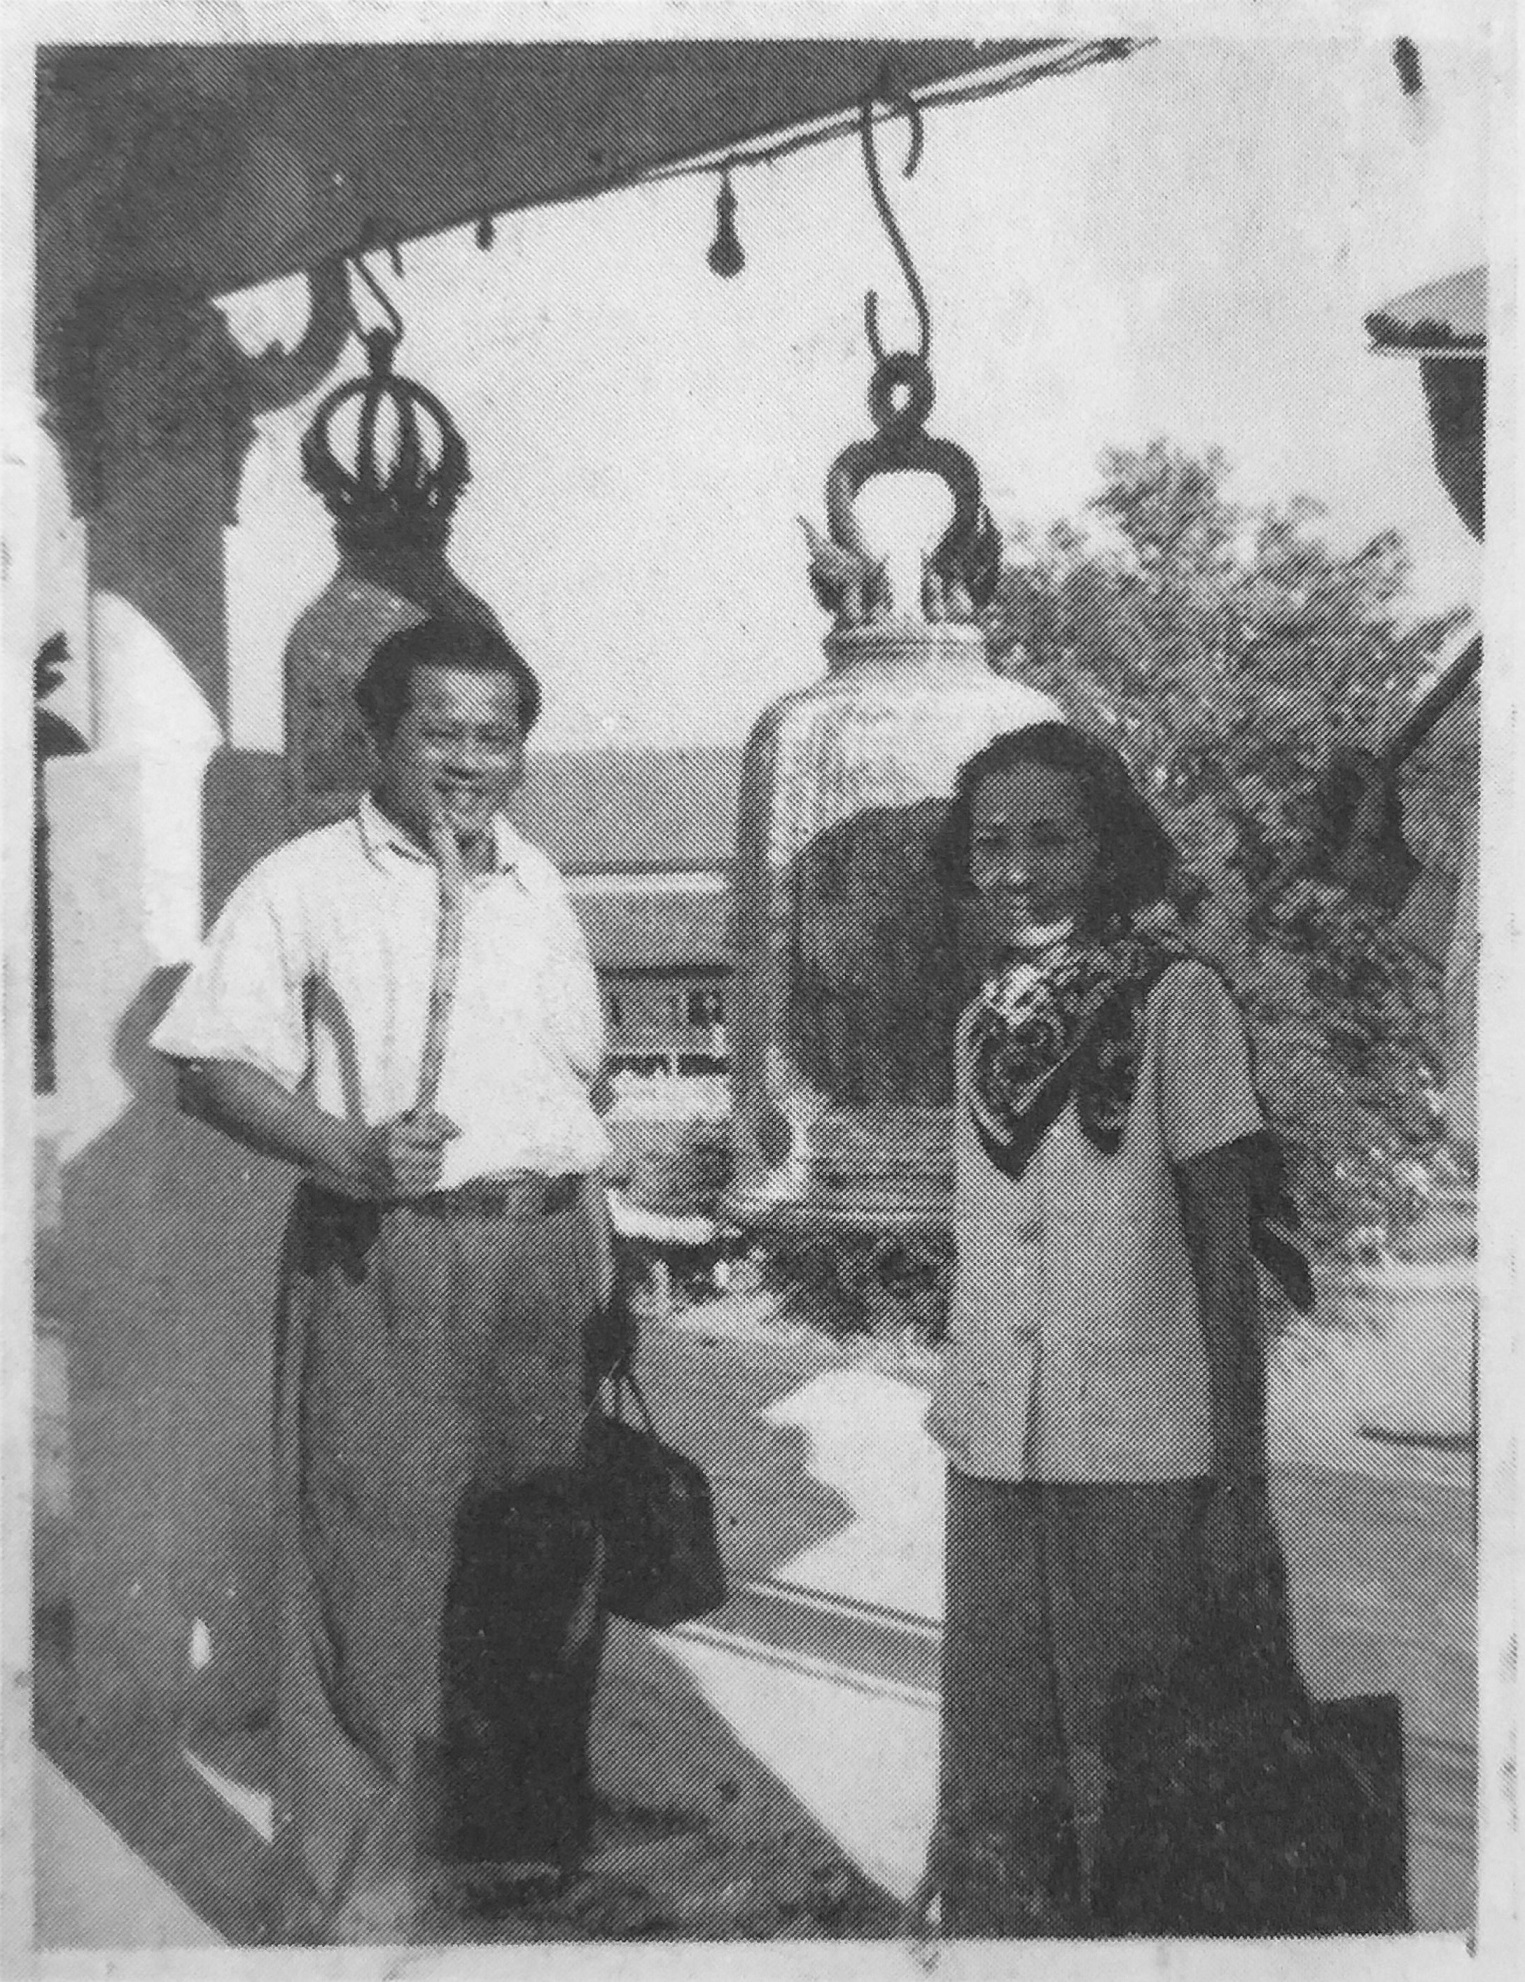 เหม เวชกร กับภรรยา แช่มชื่น เวชกร (photo: หนังสือ 100 ปี เหม เวชกร)